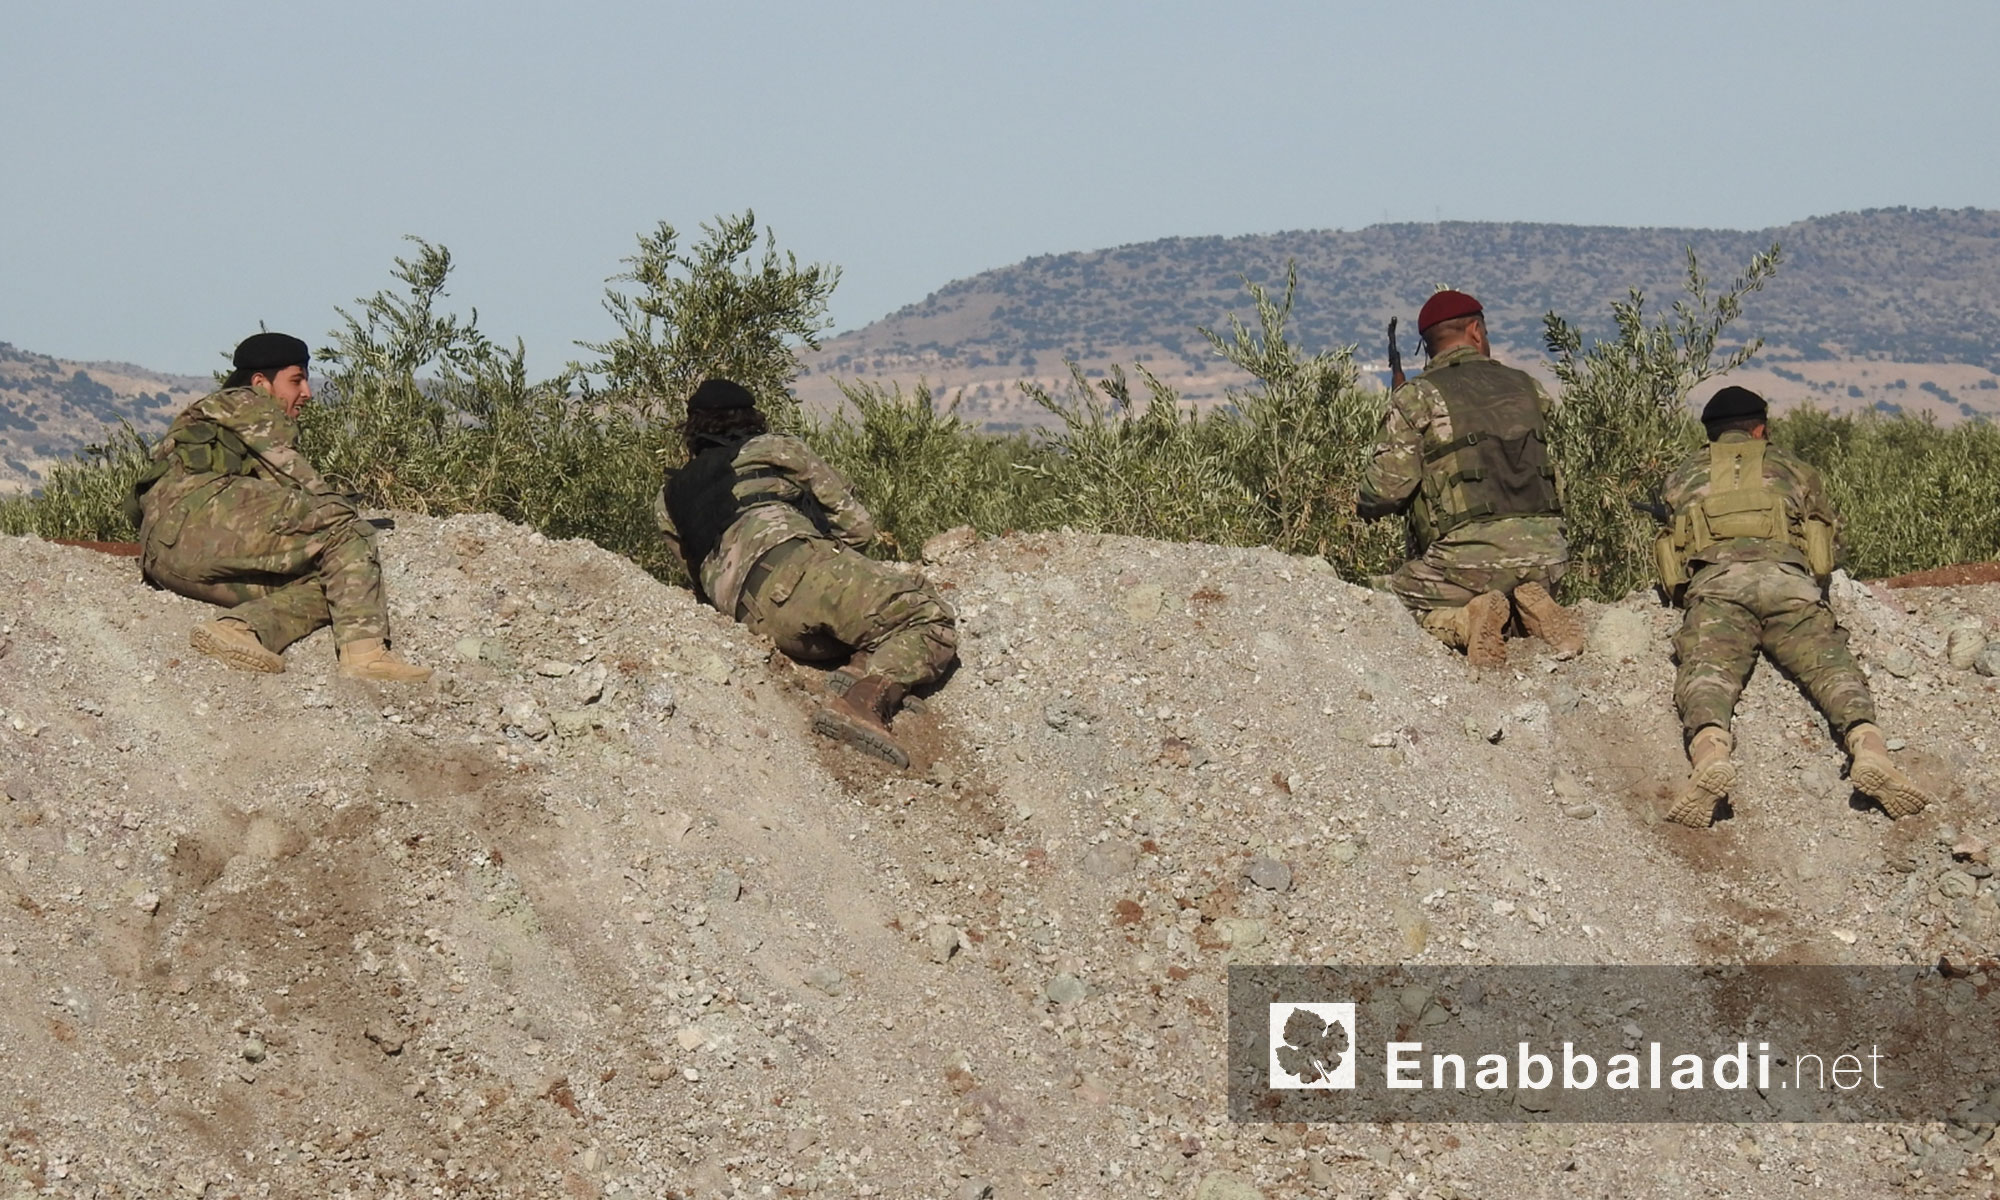 لواء المعتصم التابع للجيش السوري الحر يخرج مقاتلين جدد خضعوا لدورة تدريبية شمالي حلب - 27 كانون الأول 2017 (عنب بلدي)